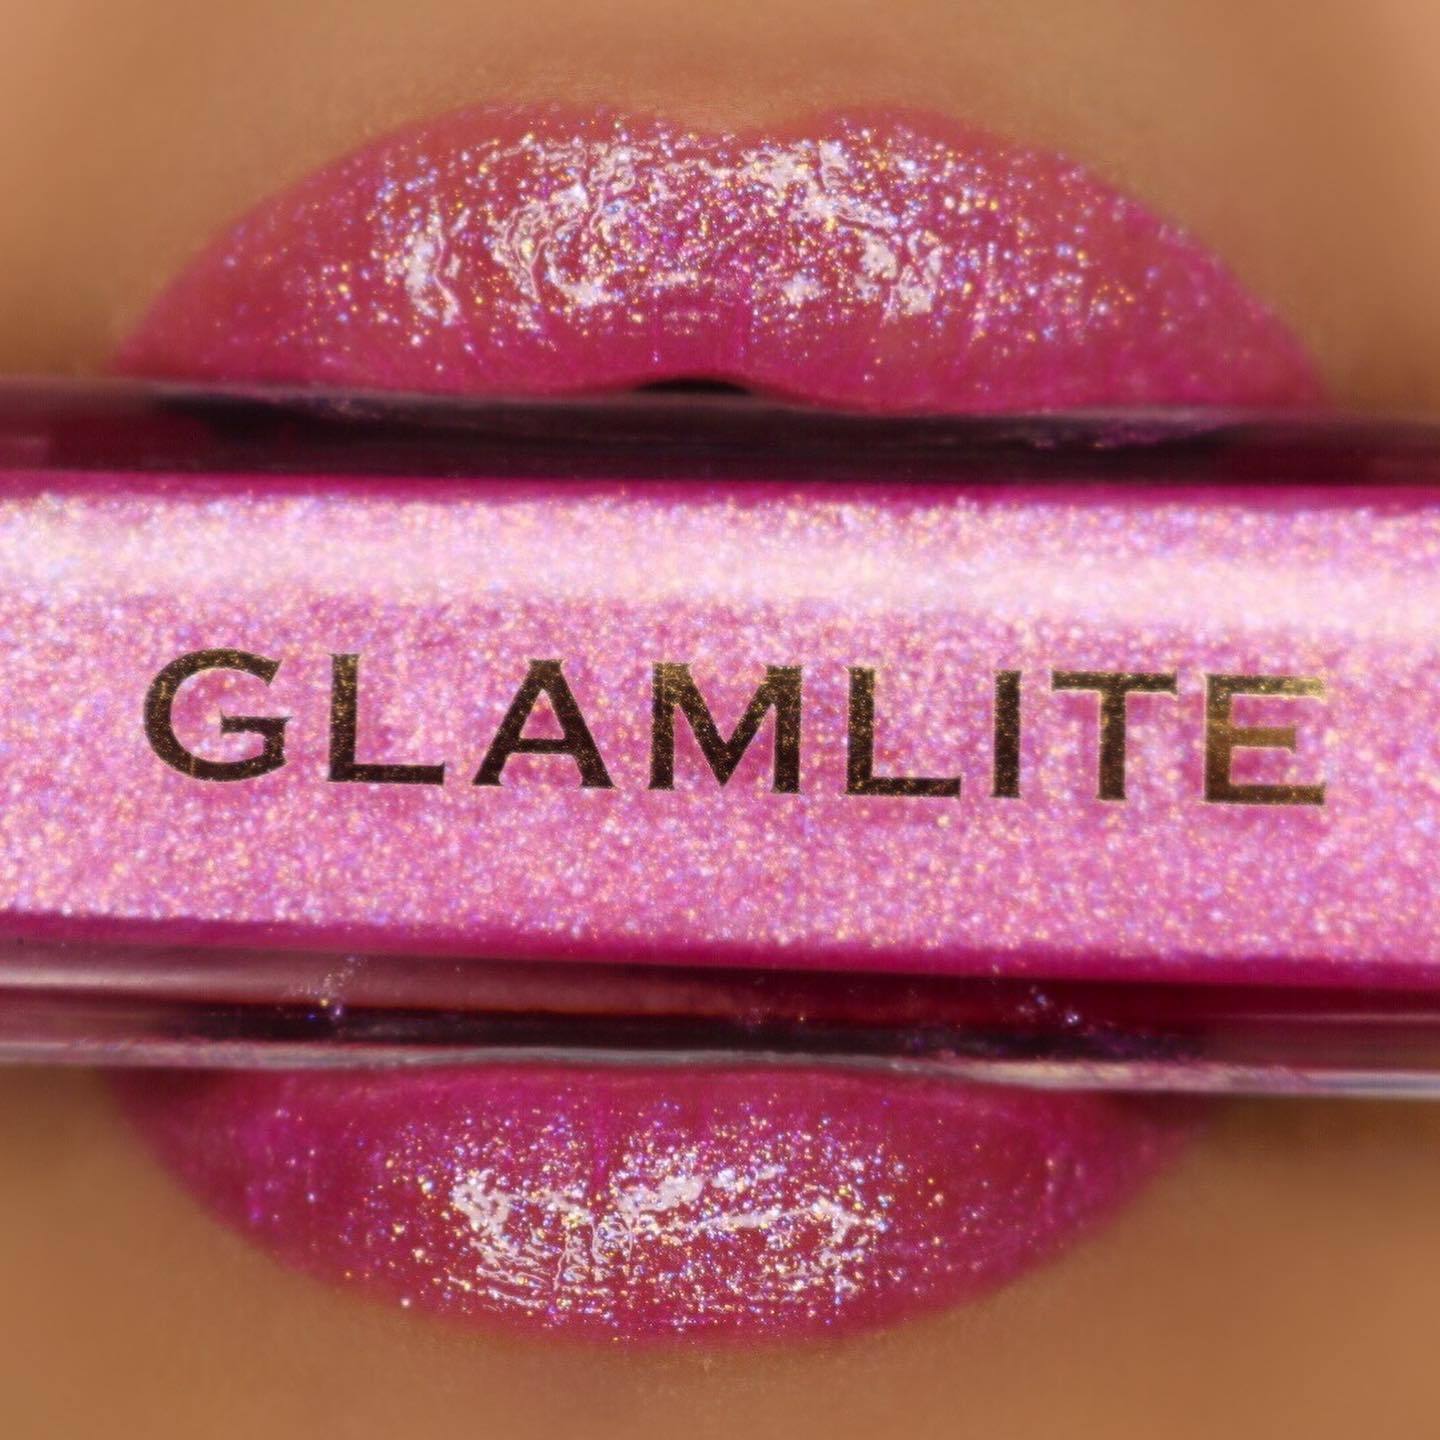 Glamlite Cosmetics - Milkshake Lips